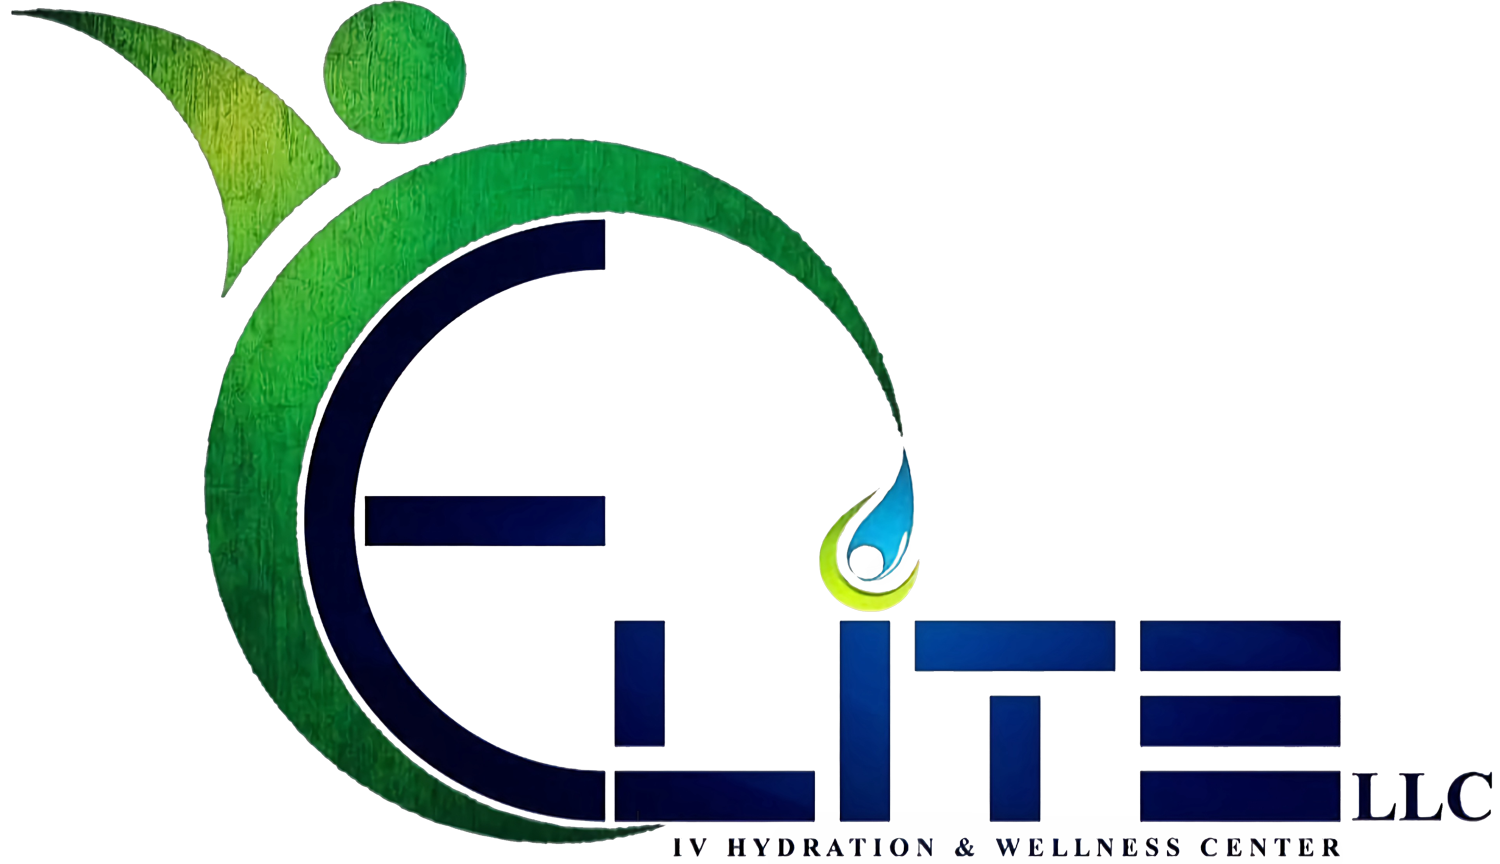 Elite IV Hydration & Wellness Center Mobile Logo